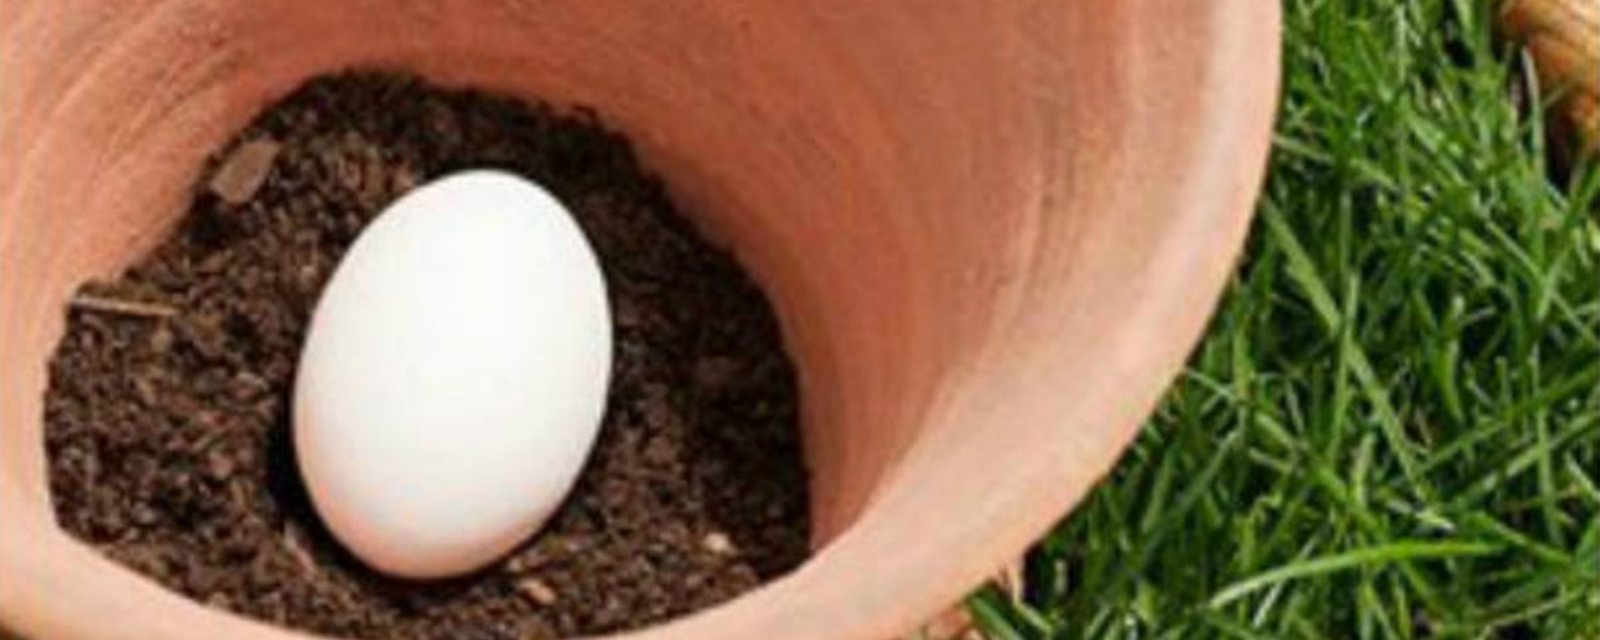 Pourquoi devriez-vous planter un œuf cru dans vos pots de fleurs? Parce que ça marche!